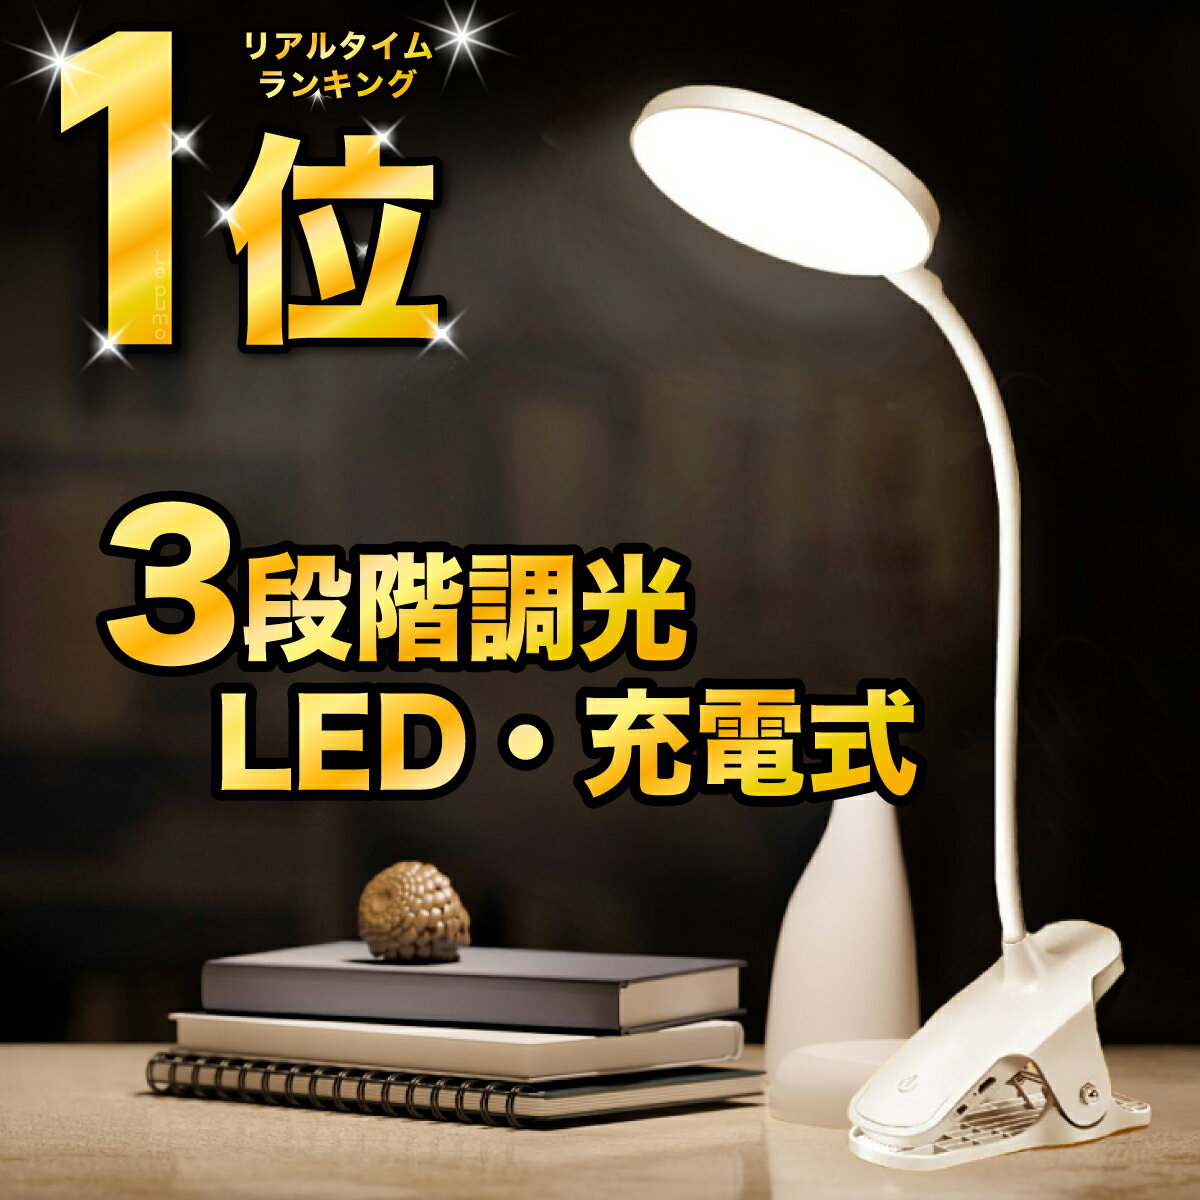 オーム電機 LEDクリップライト ホワイト LTL-CK14-W